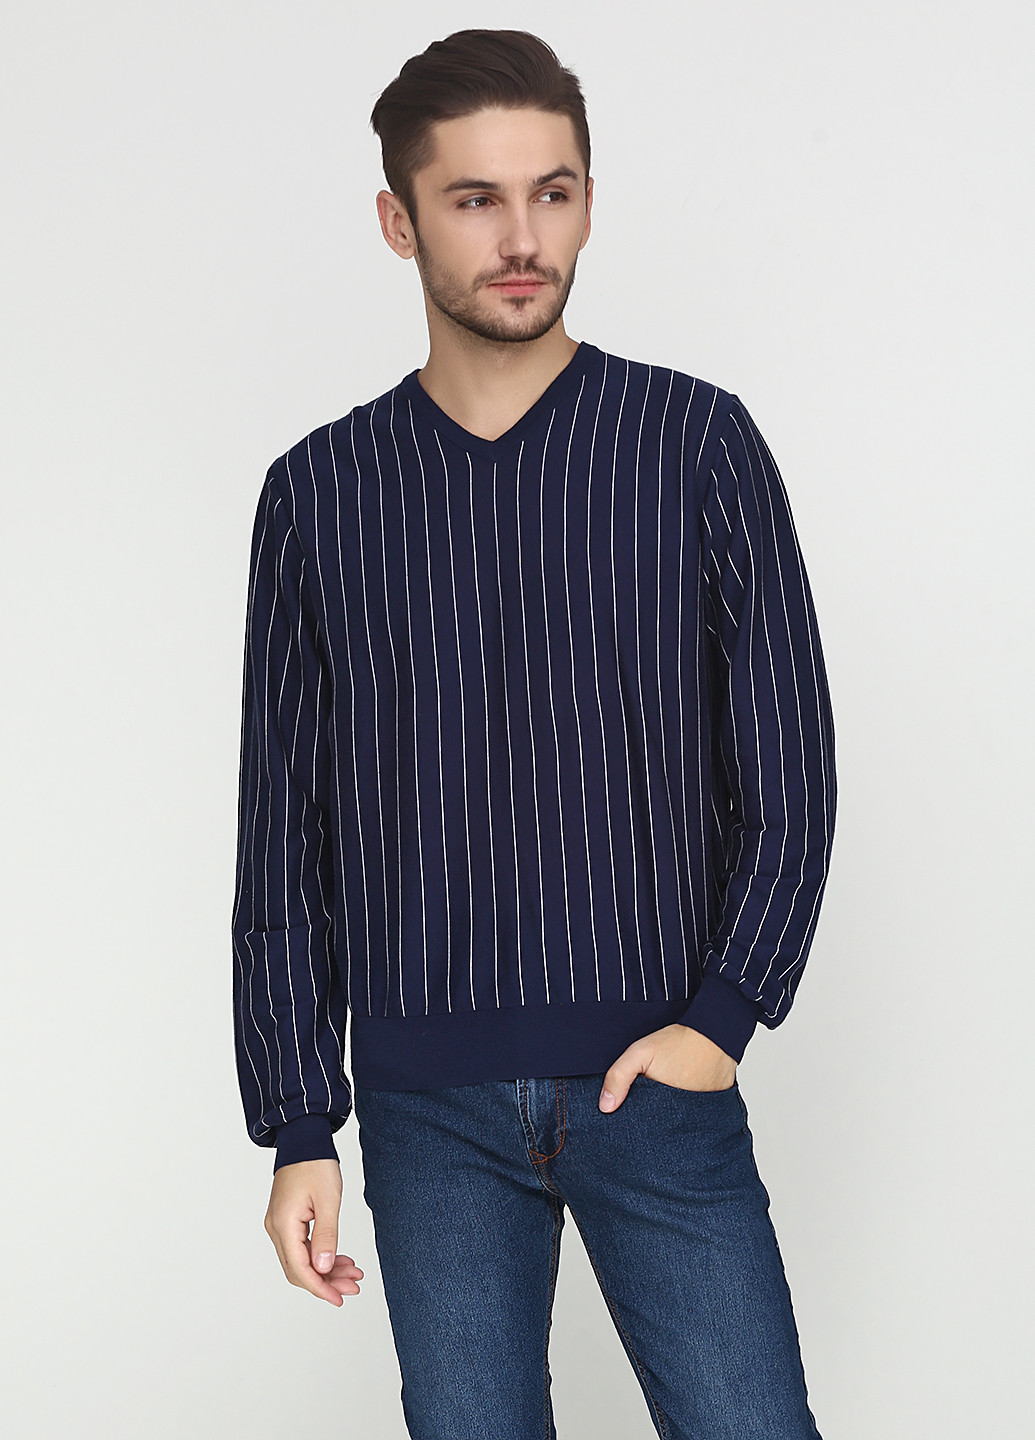 Темно-синий демисезонный свитер пуловер Ralph Lauren